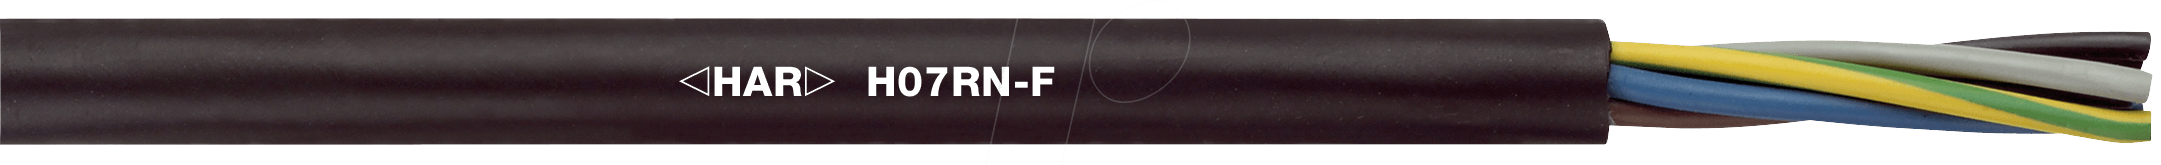 H07RNF 5G1,5-100 - Anschlussleitung H07RN-F, 5 x 1,5 mm, 100 m, mit PE